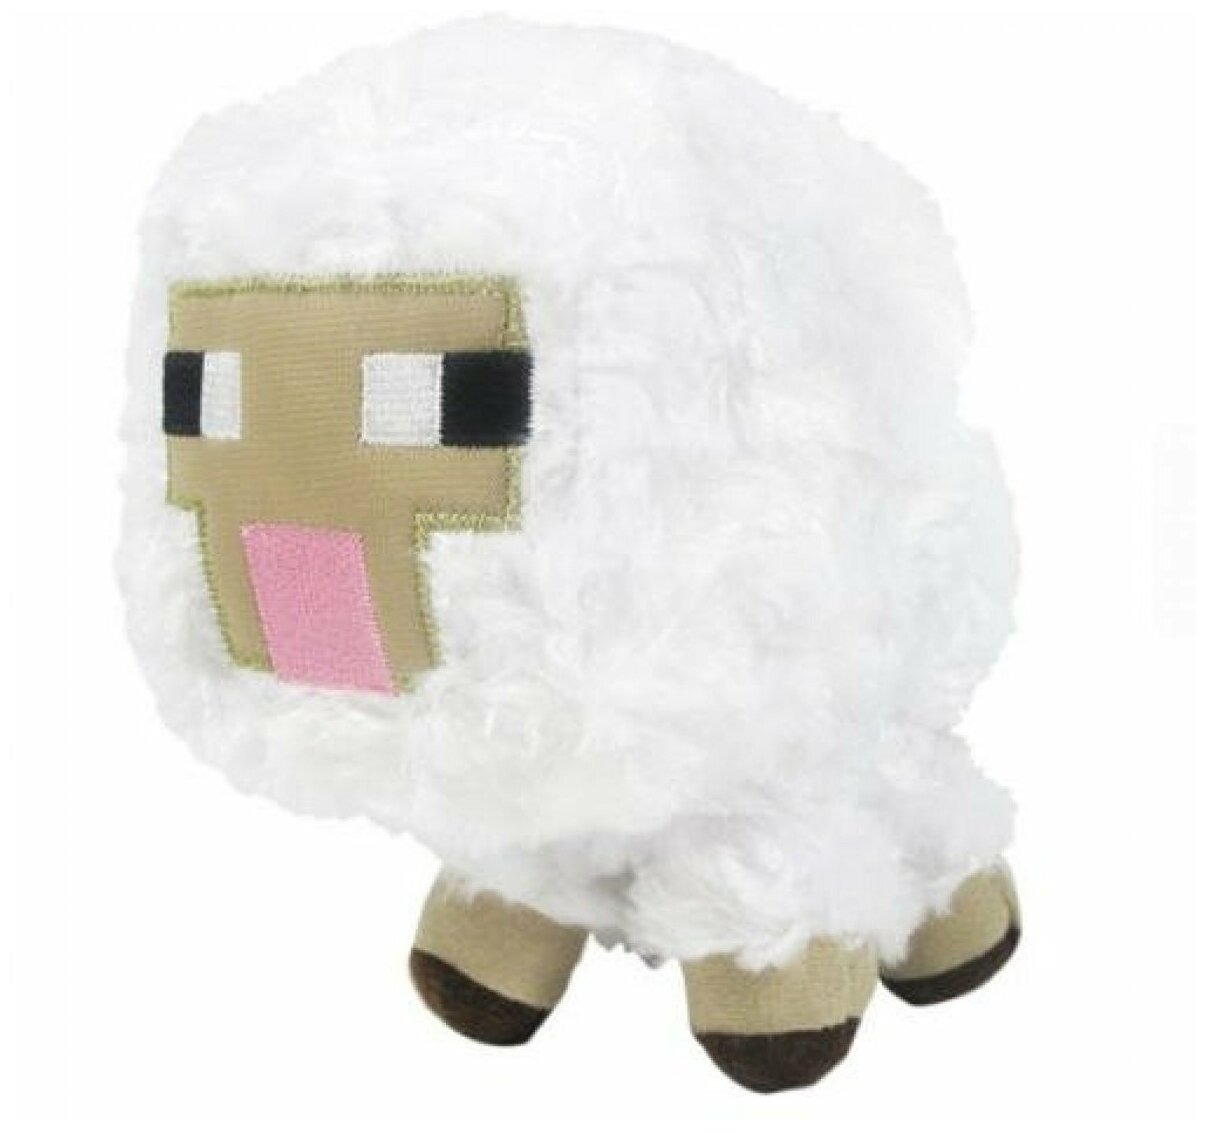 Мягкая игрушка Майнкрафт "Овца", 13 см